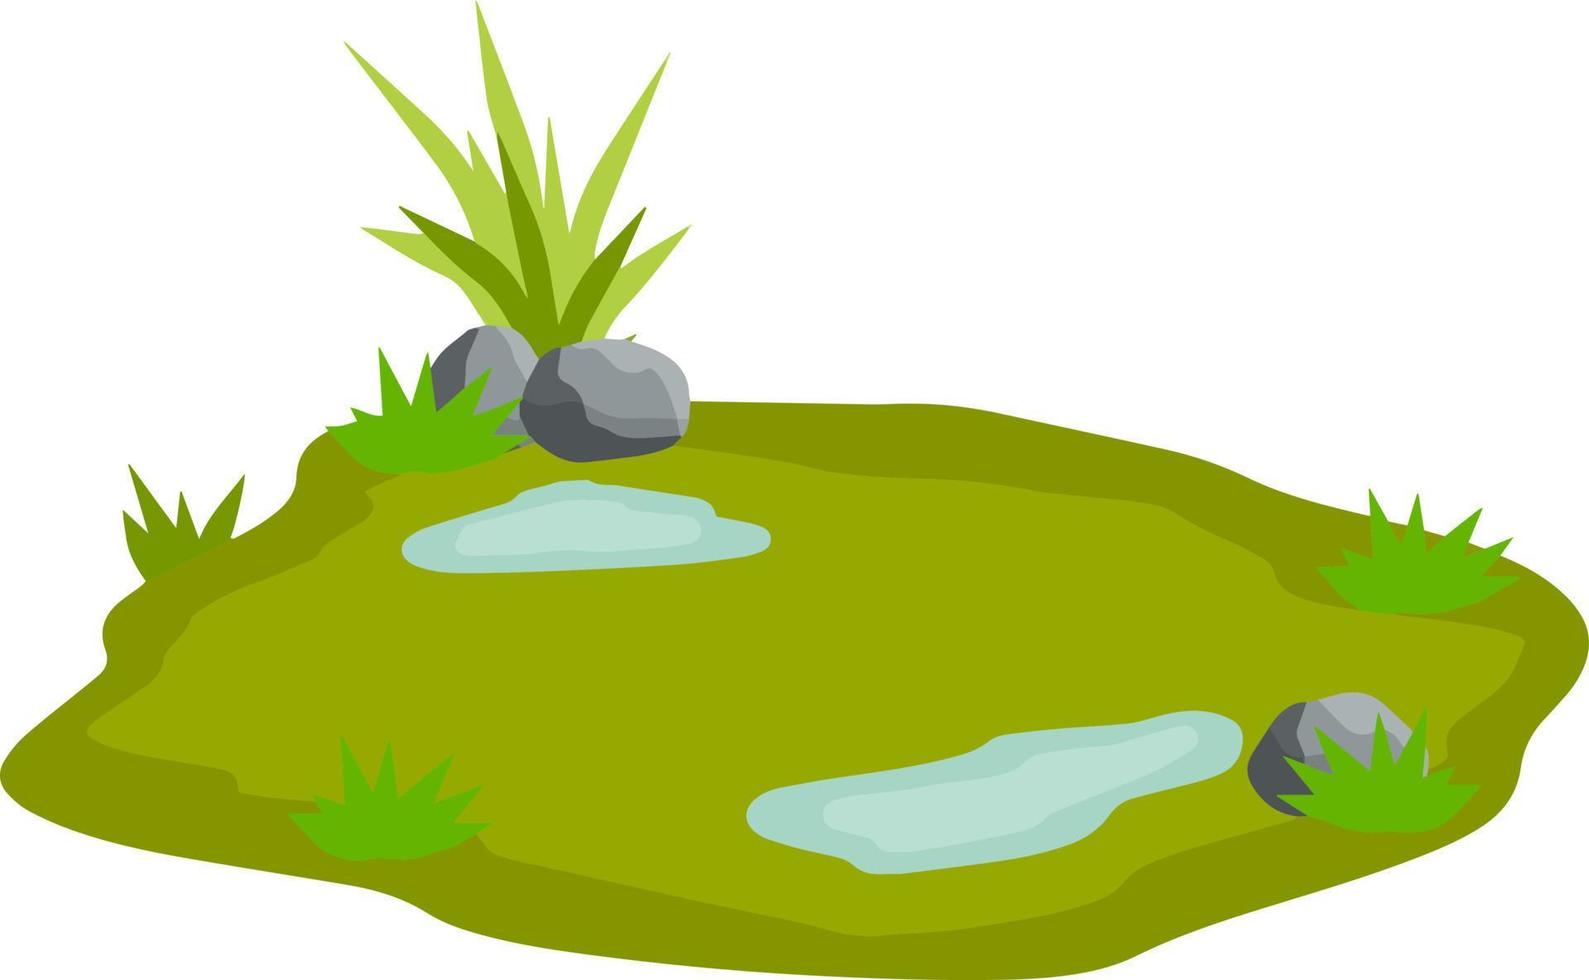 damm och träsk, sjö. landskap med gräs, stenar. plattform och jord. bakgrund för illustration. platt tecknad serie. element av natur och skogar och vatten vektor